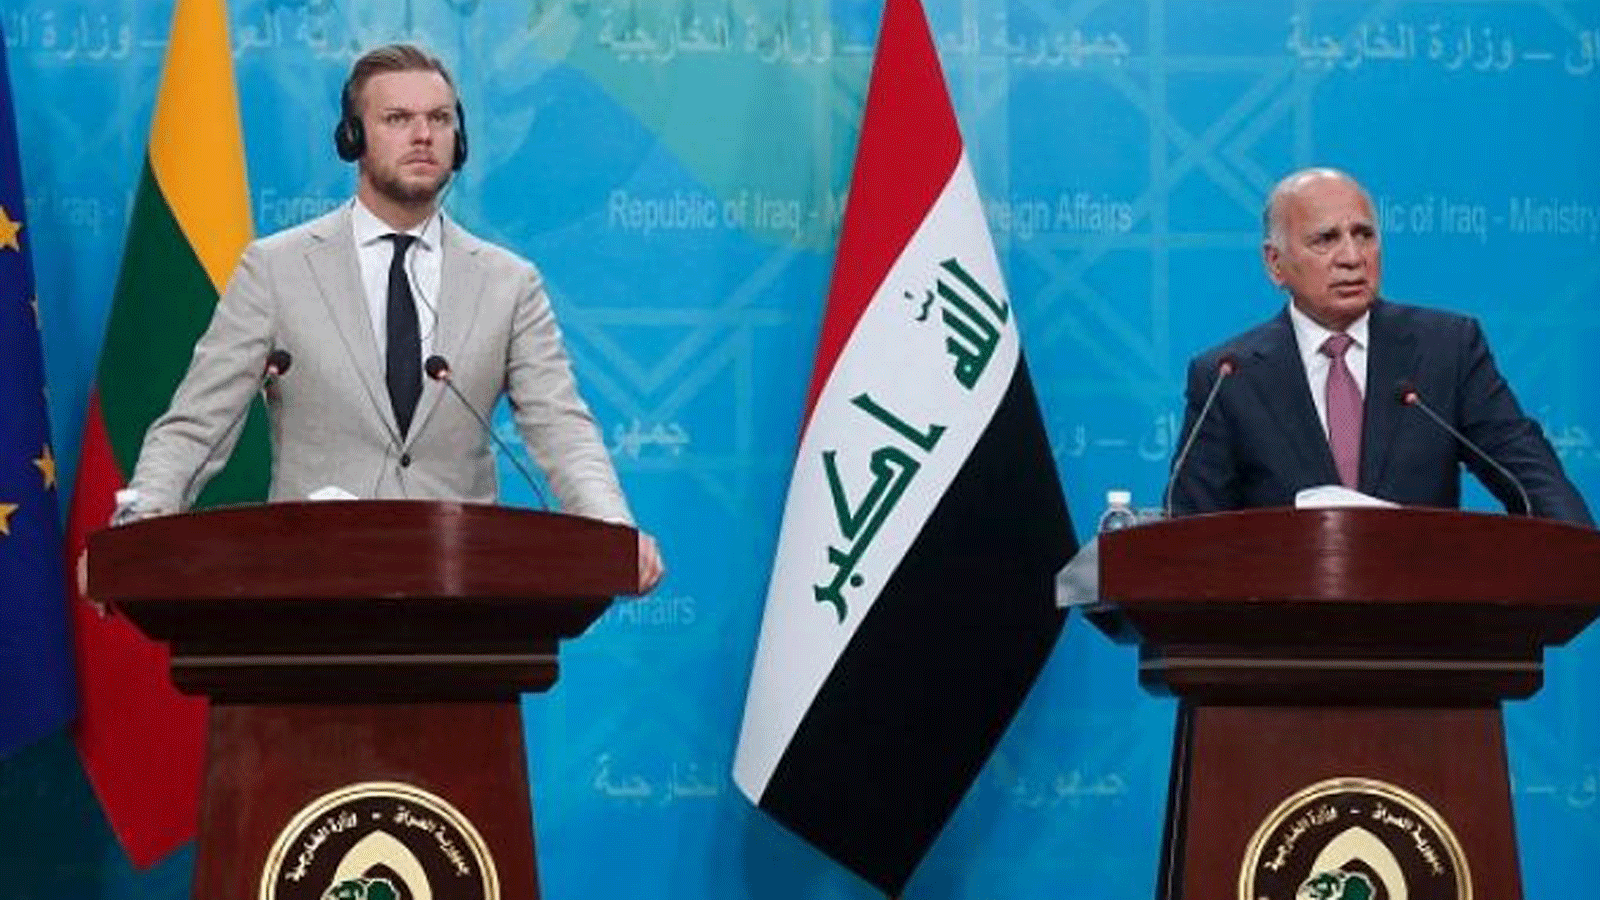 وزيرا خارجية العراق وليتوانيا خلال مؤتمرهما الصحافي أثناء زيارة الأخير الى بغداد في تموز يوليو الماضي